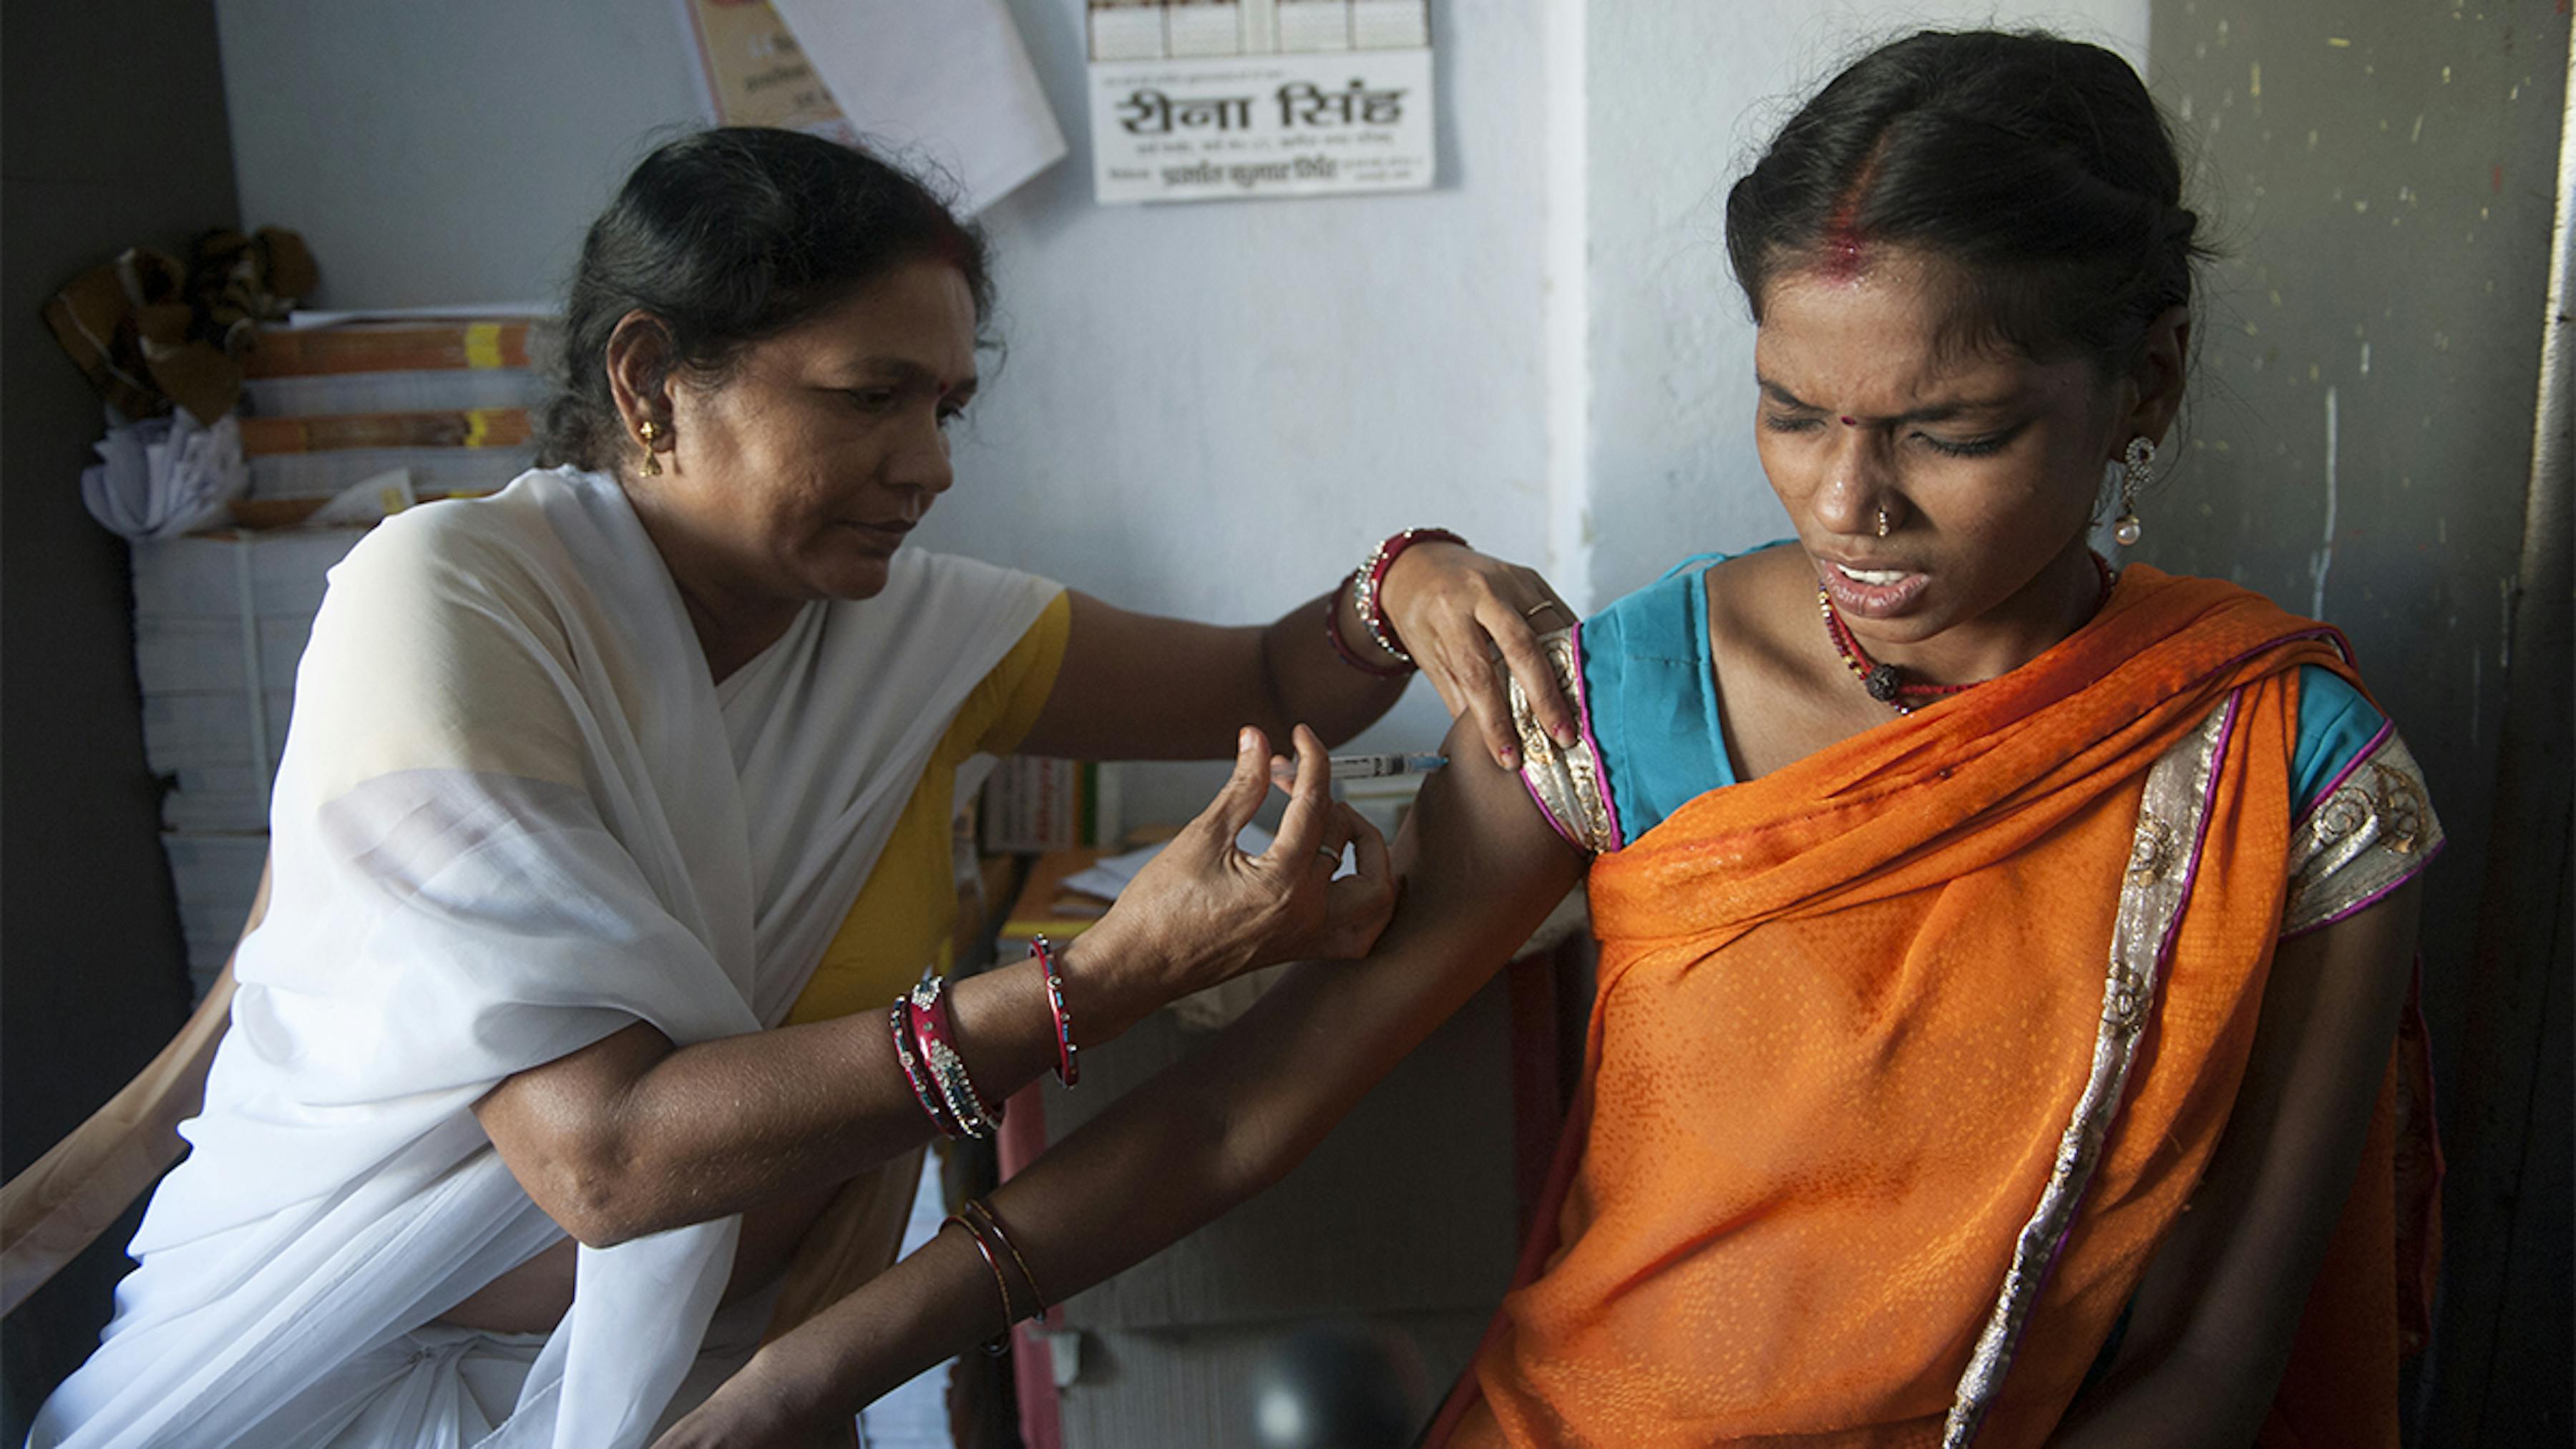 India, Sanju kumari, ostetrica infermiera somministra il vaccino contro il tetano a Lakshmi Devi, 19 anni.